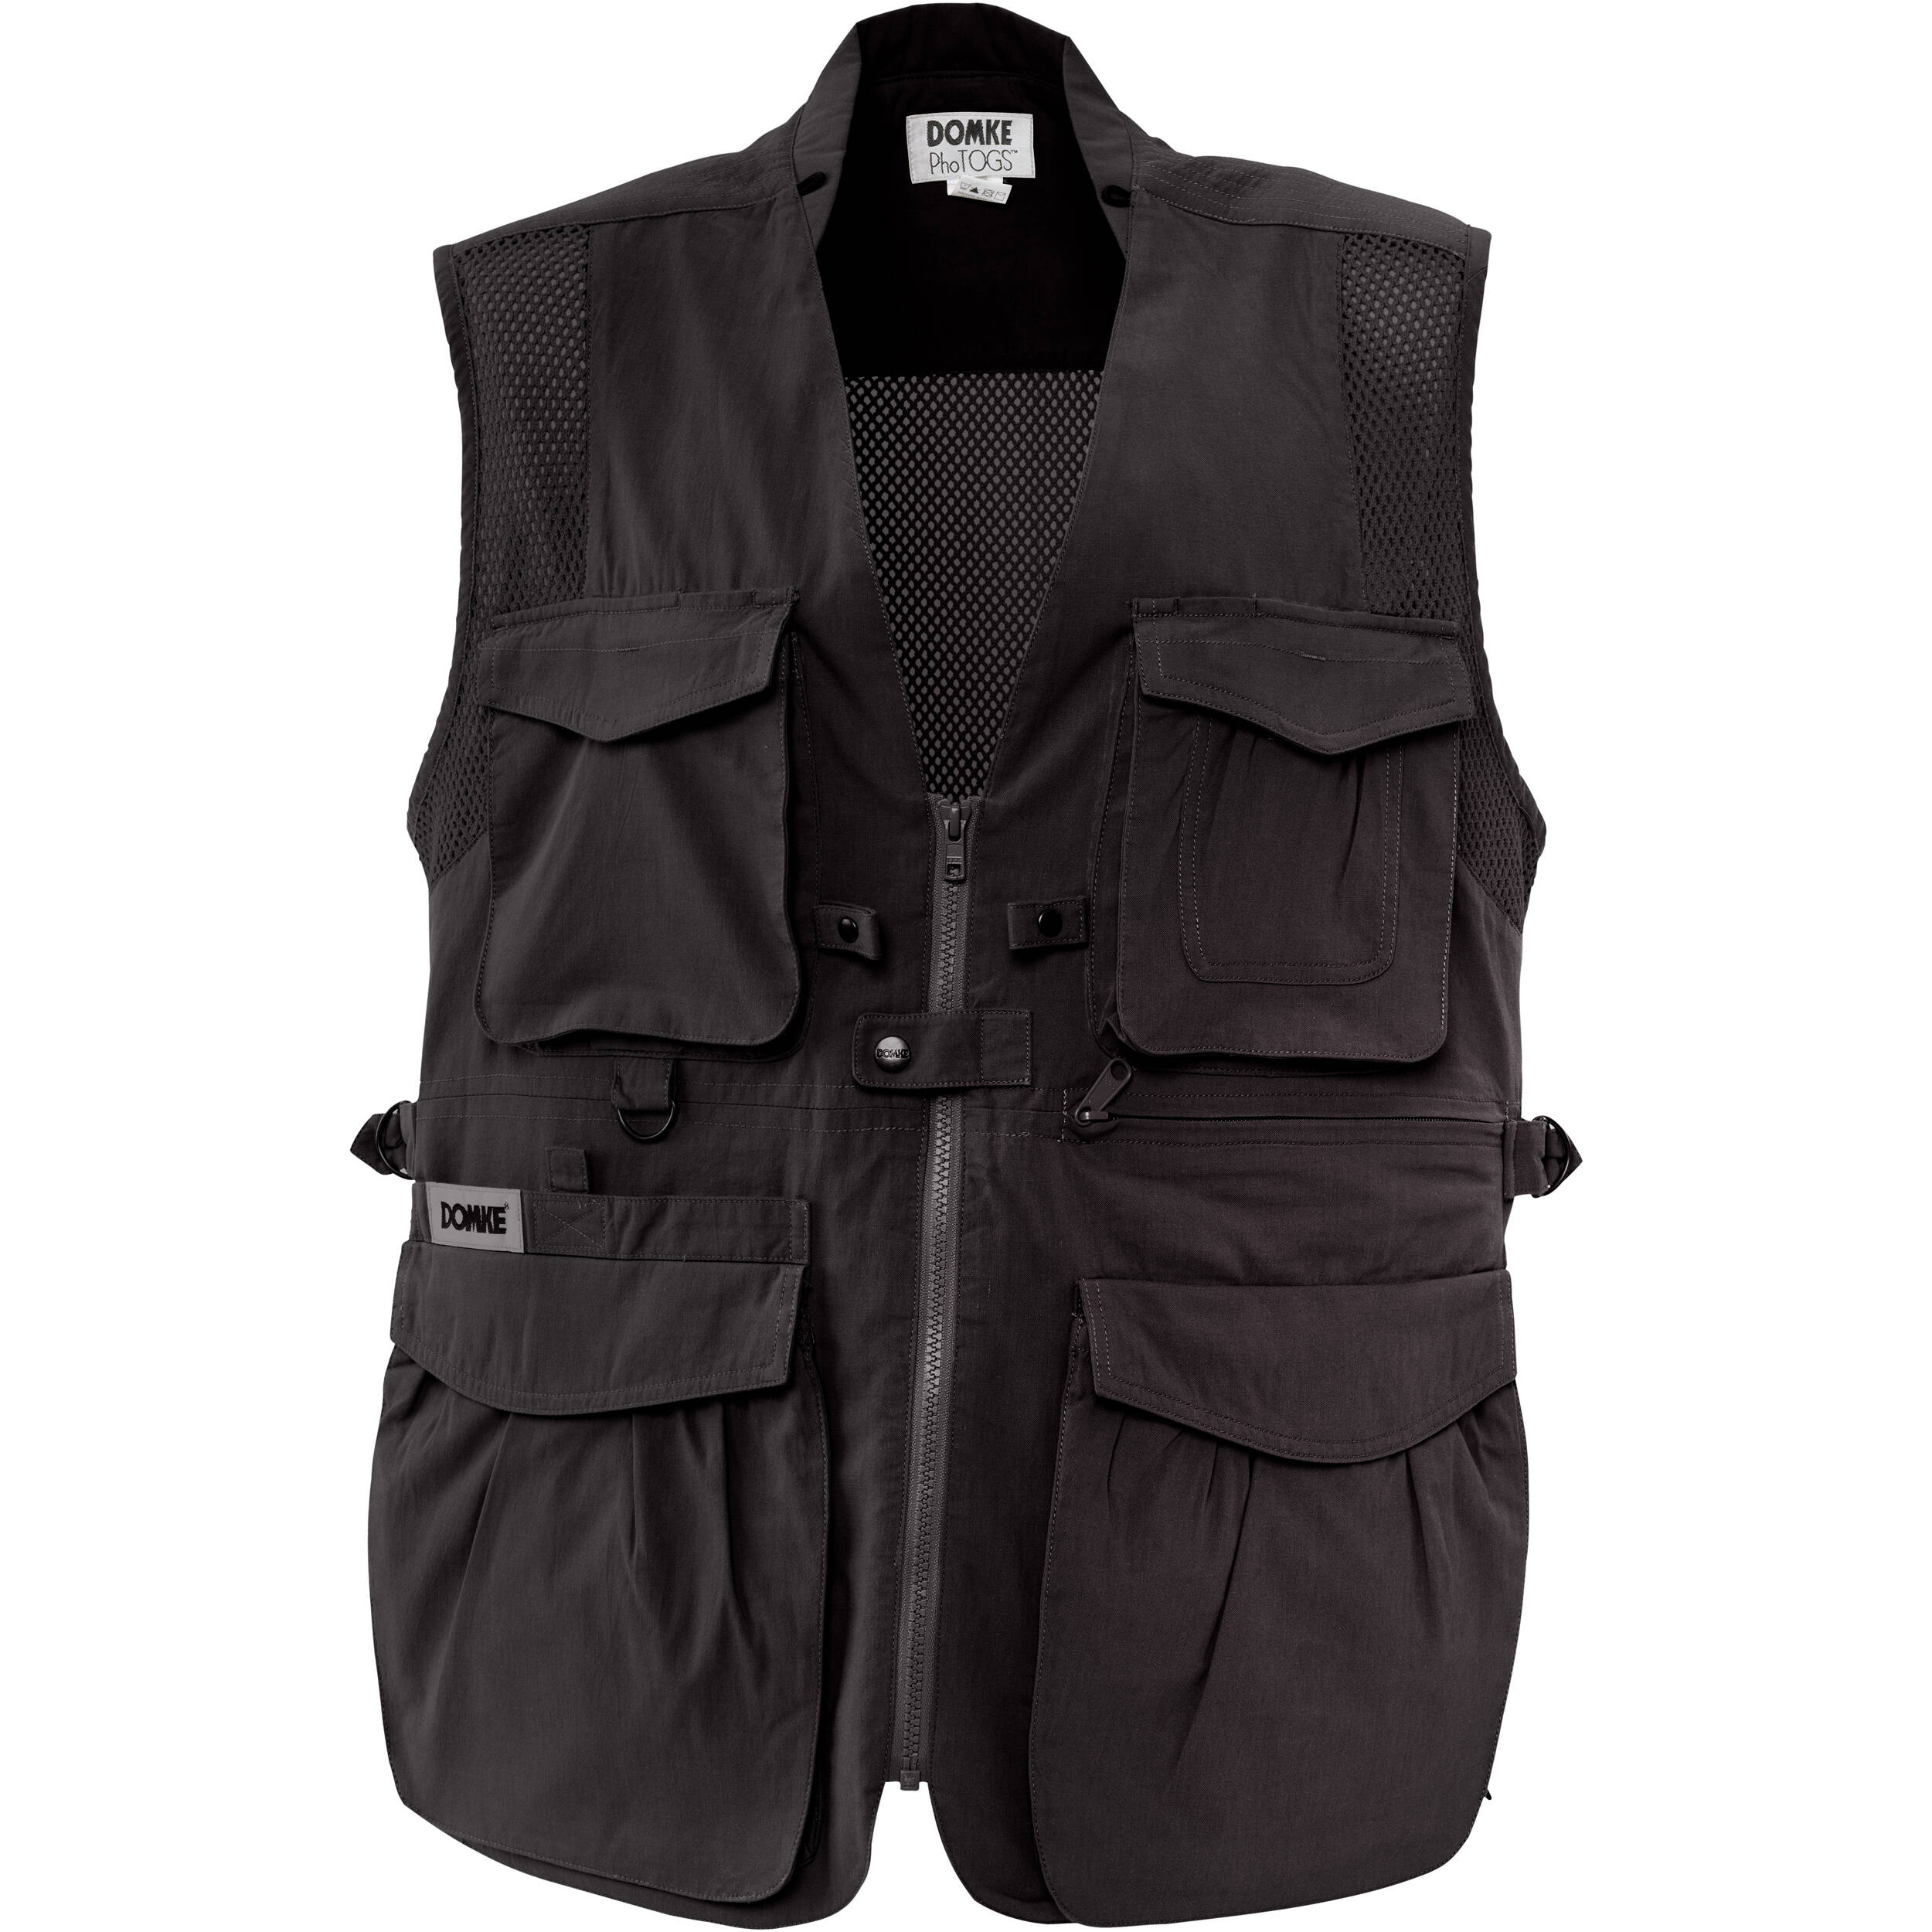 Domke PhoTOGS Vest (X-Large, Black)